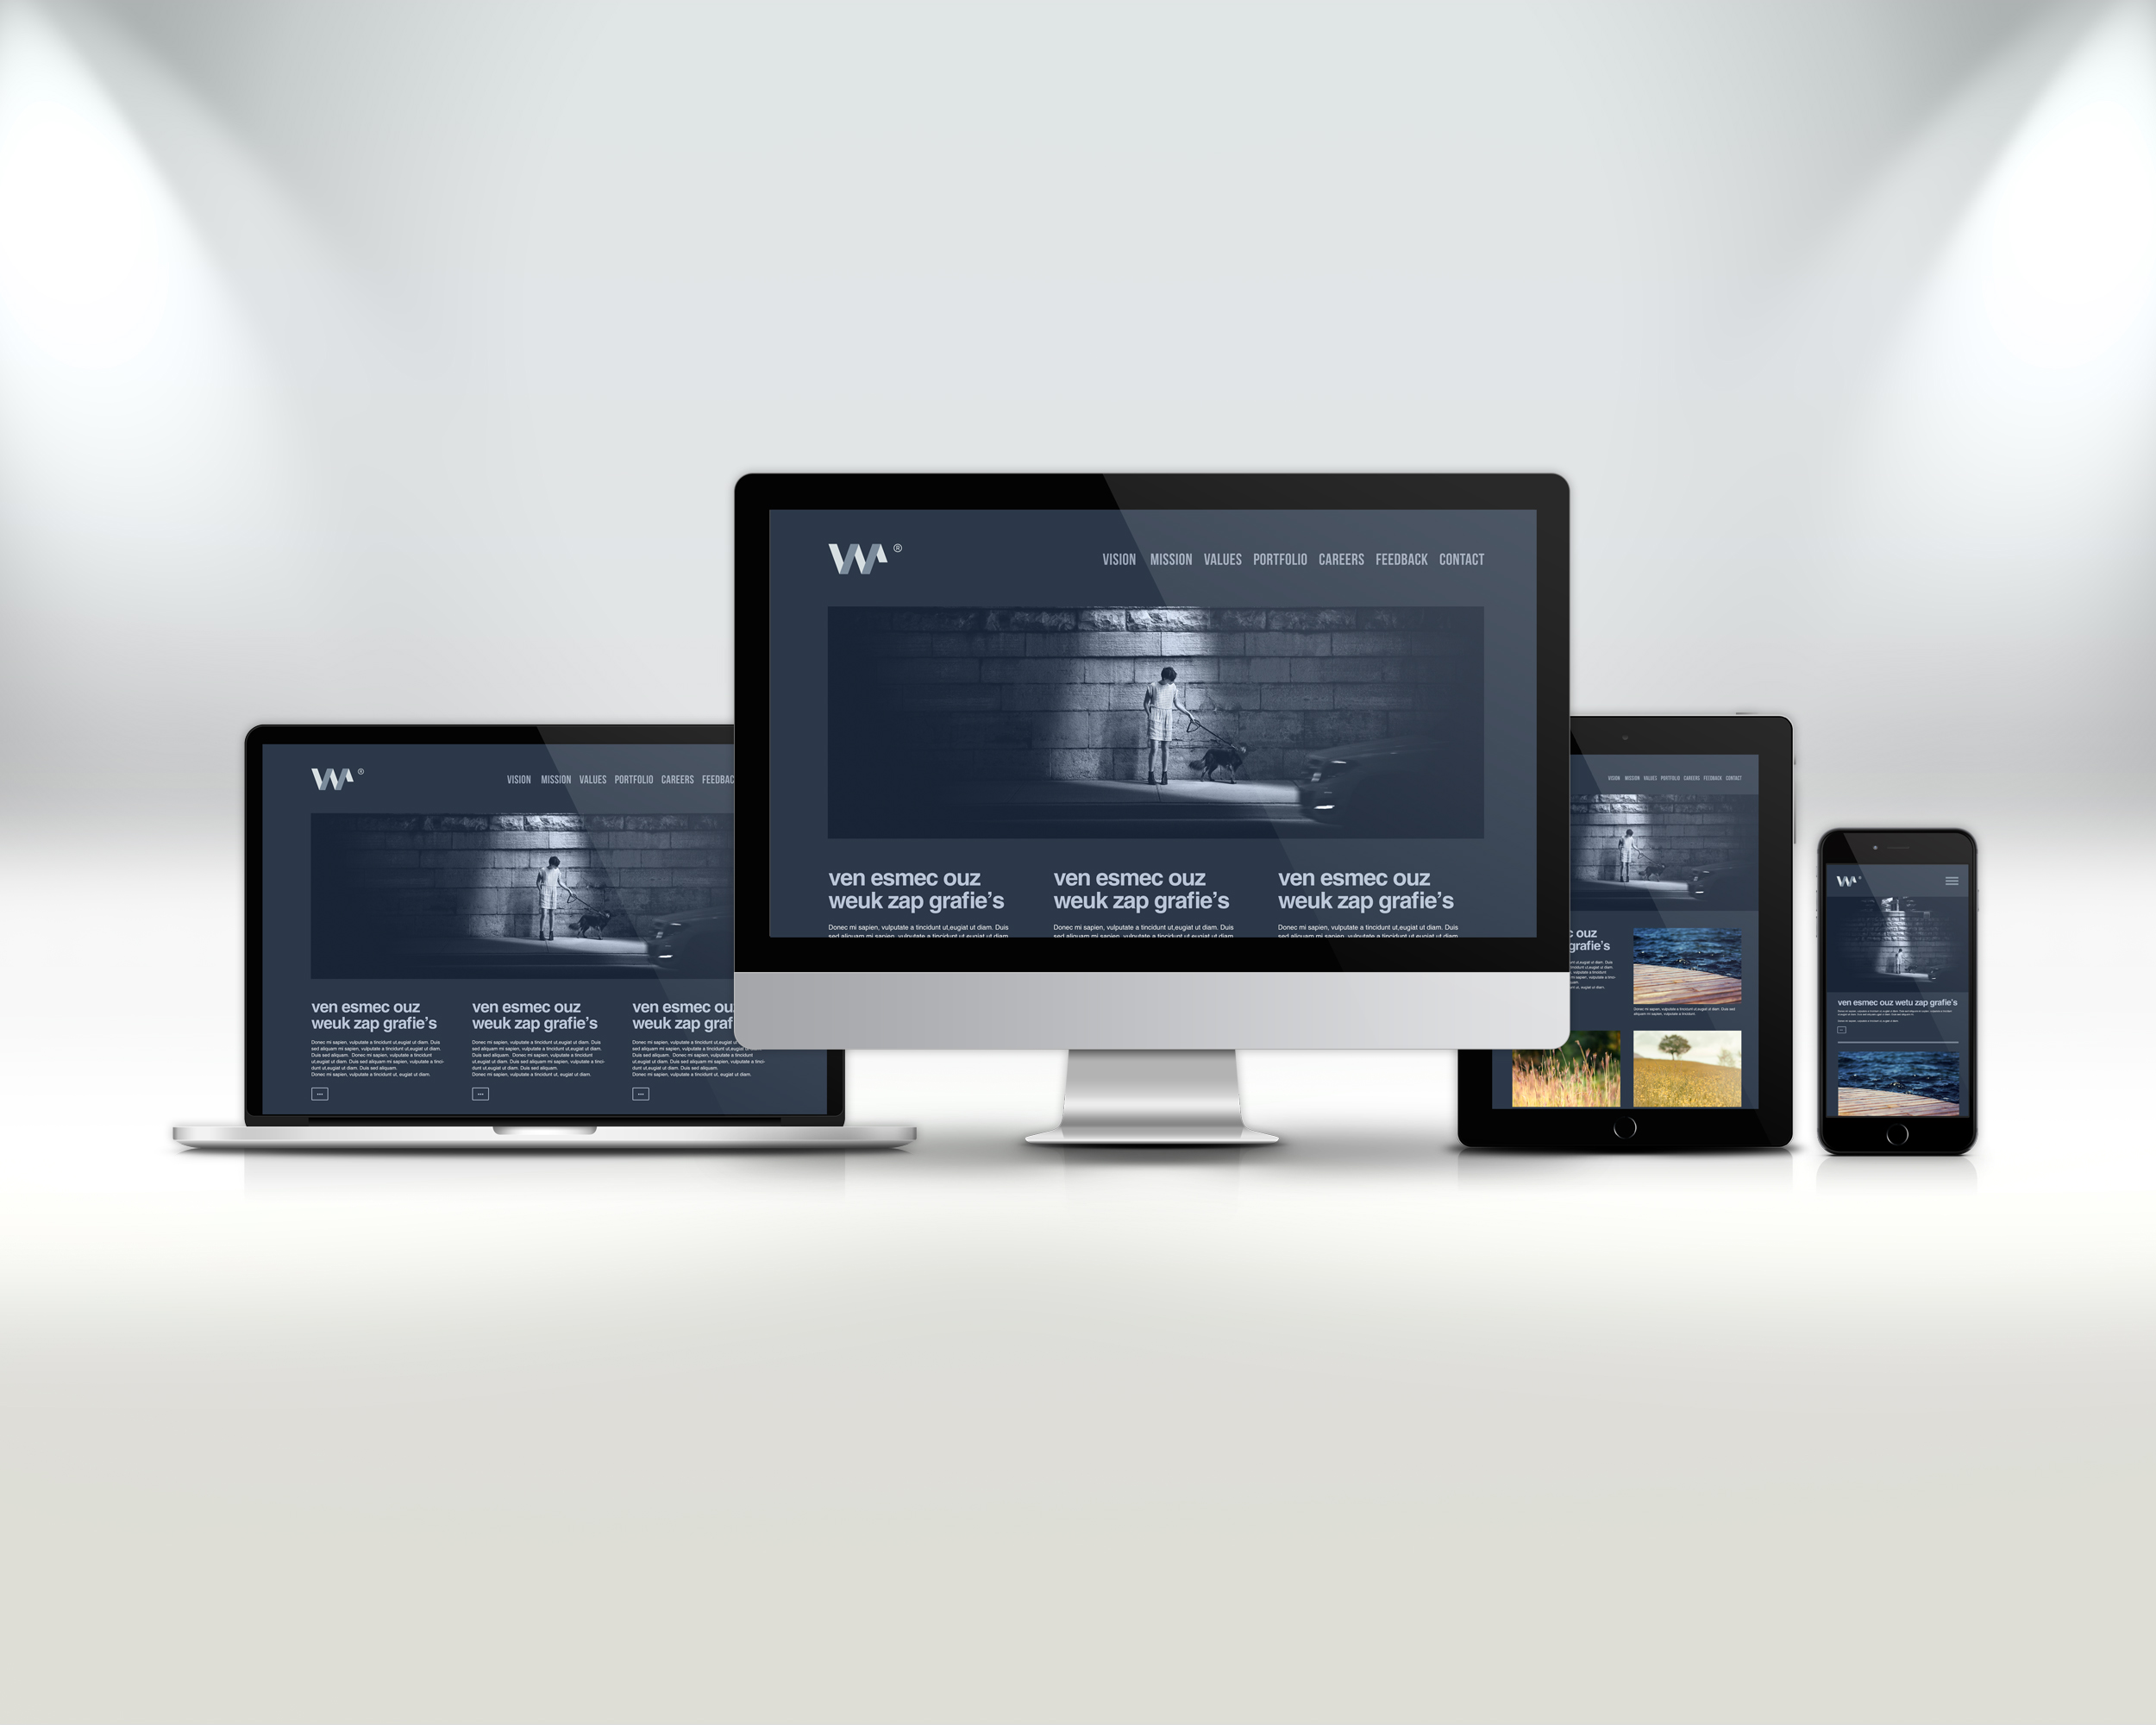 Devices channel. Адаптивный дизайн в веб дизайне что это. Мокапы сайтов. Mockup сайта. Респонсив дизайн и адаптивный дизайн.